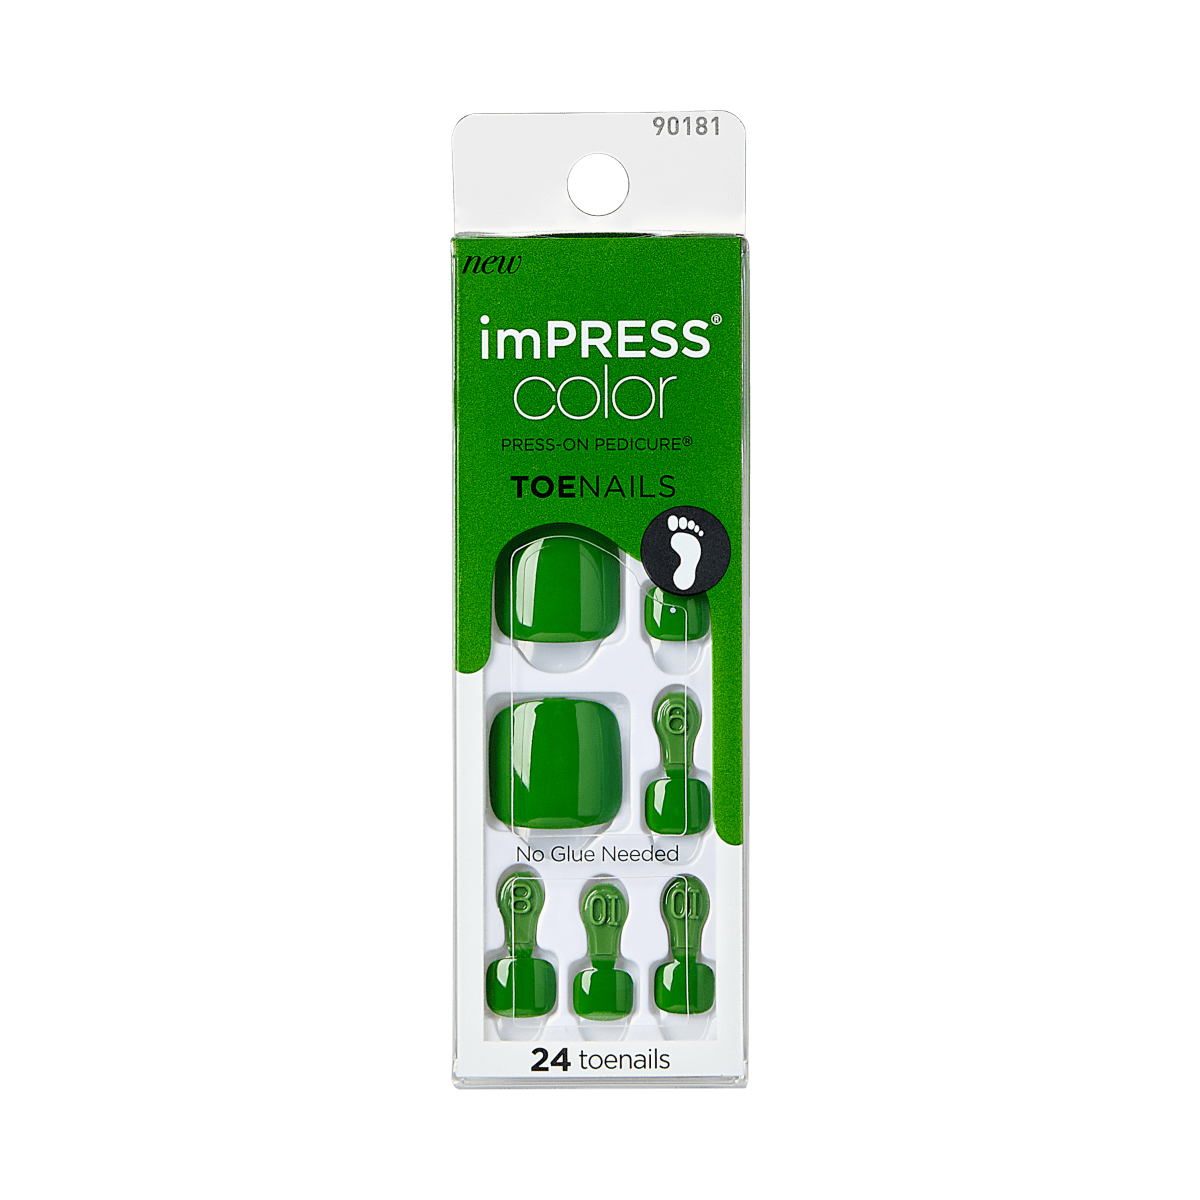 imPRESS Color Press-on Pedicure - Chill Green